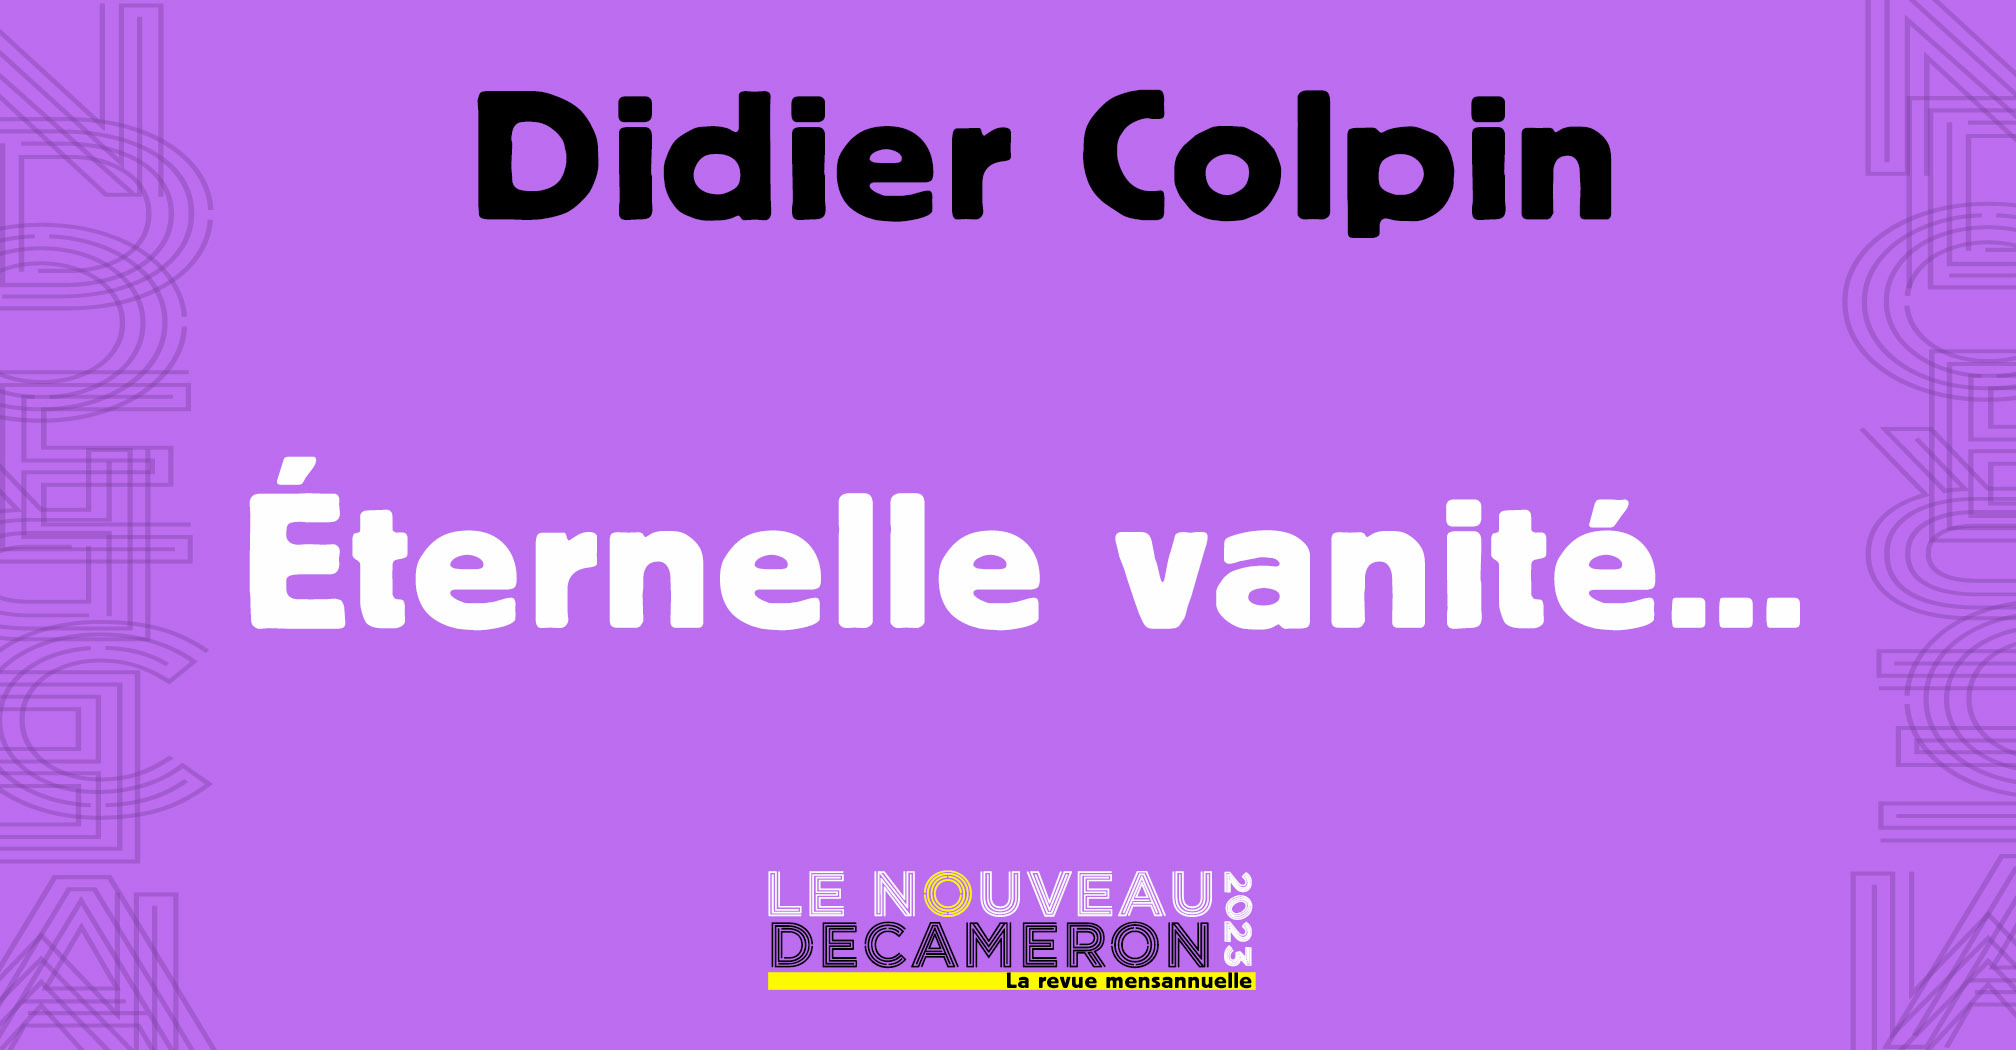 Didier Colpin - Éternelle vanité...